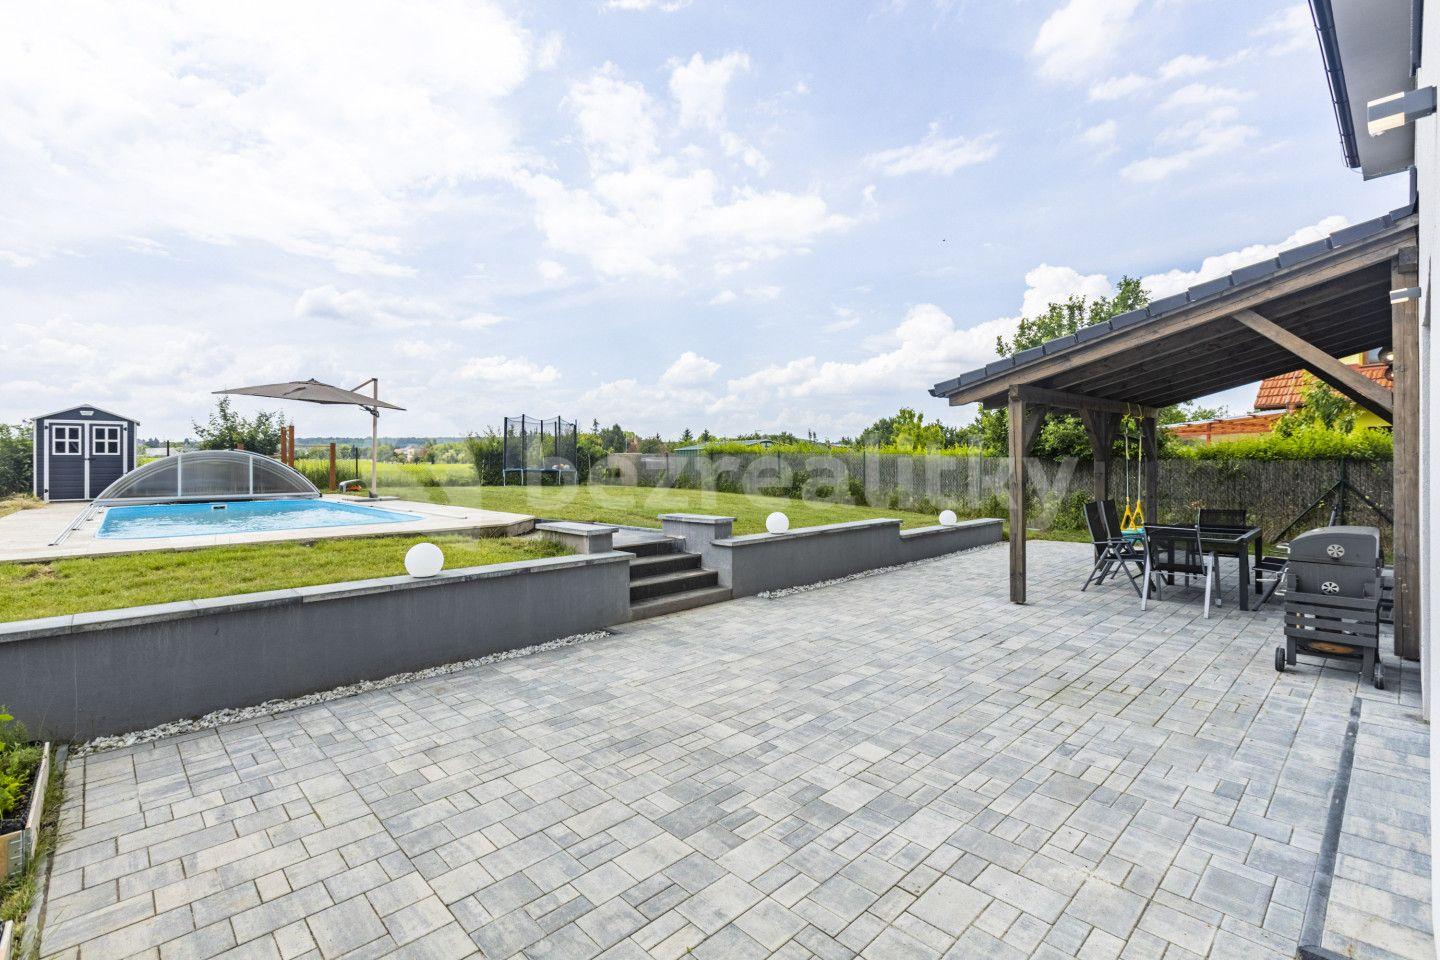 Prodej domu 285 m², pozemek 850 m², V sazenicích, Bořanovice, Středočeský kraj